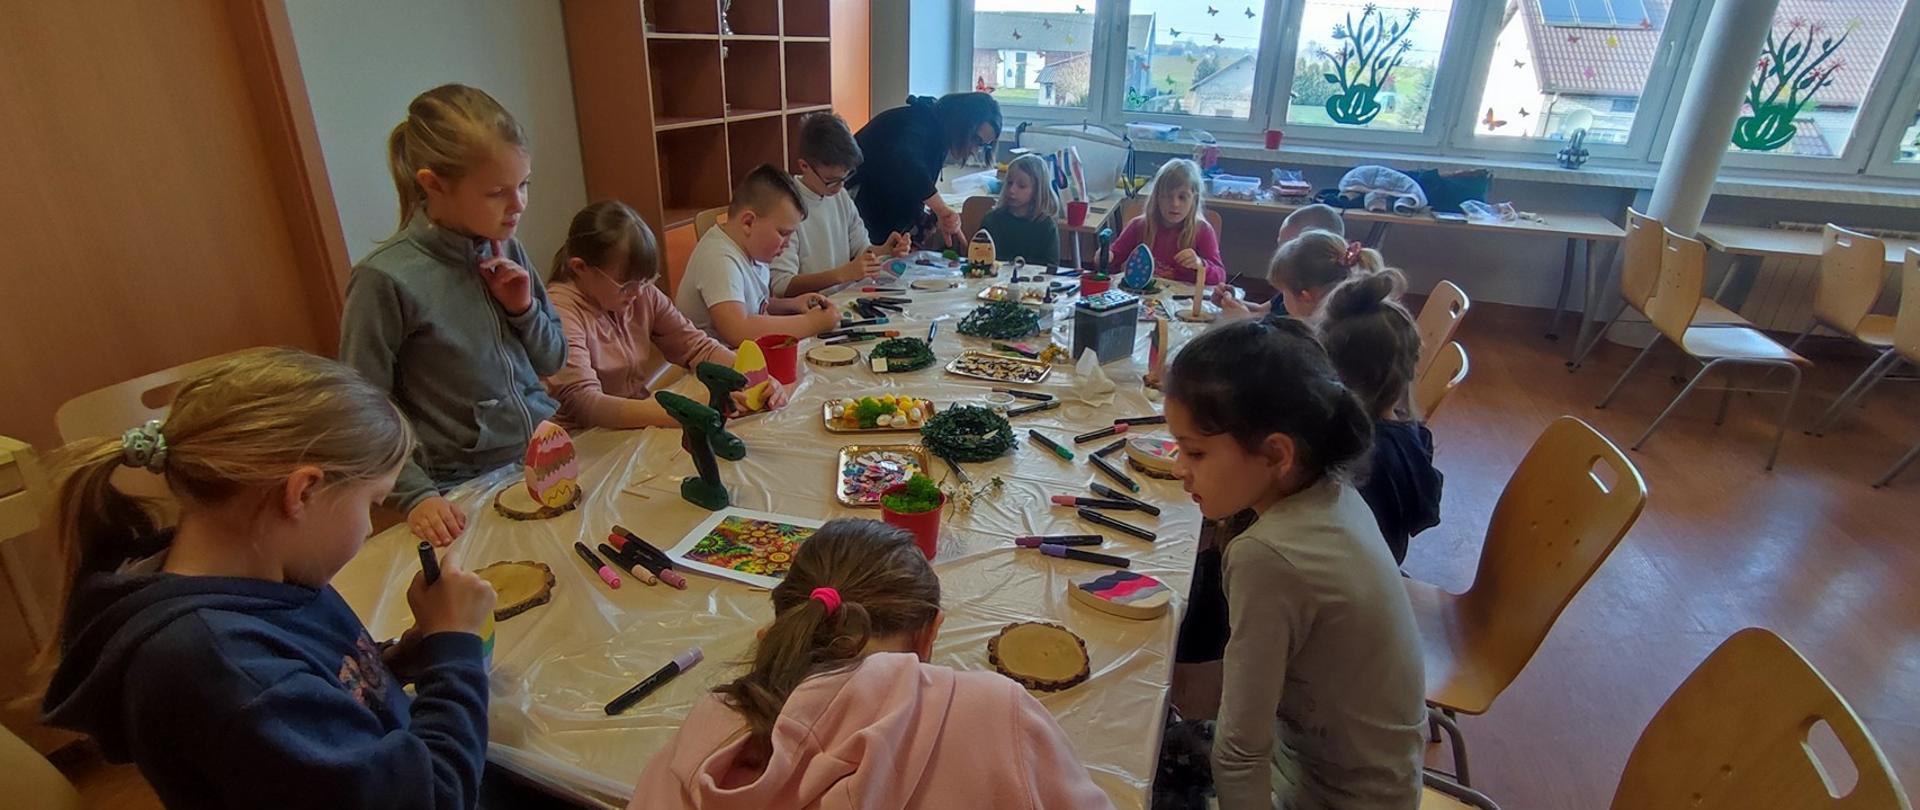 Zdjęcie przedstawia uczestników zajęć którzy dekorują swoje stroiki, malując jajka z drewna flamastrami, w tle Pani prowadząca pomaga uczestnikom w zajęciach